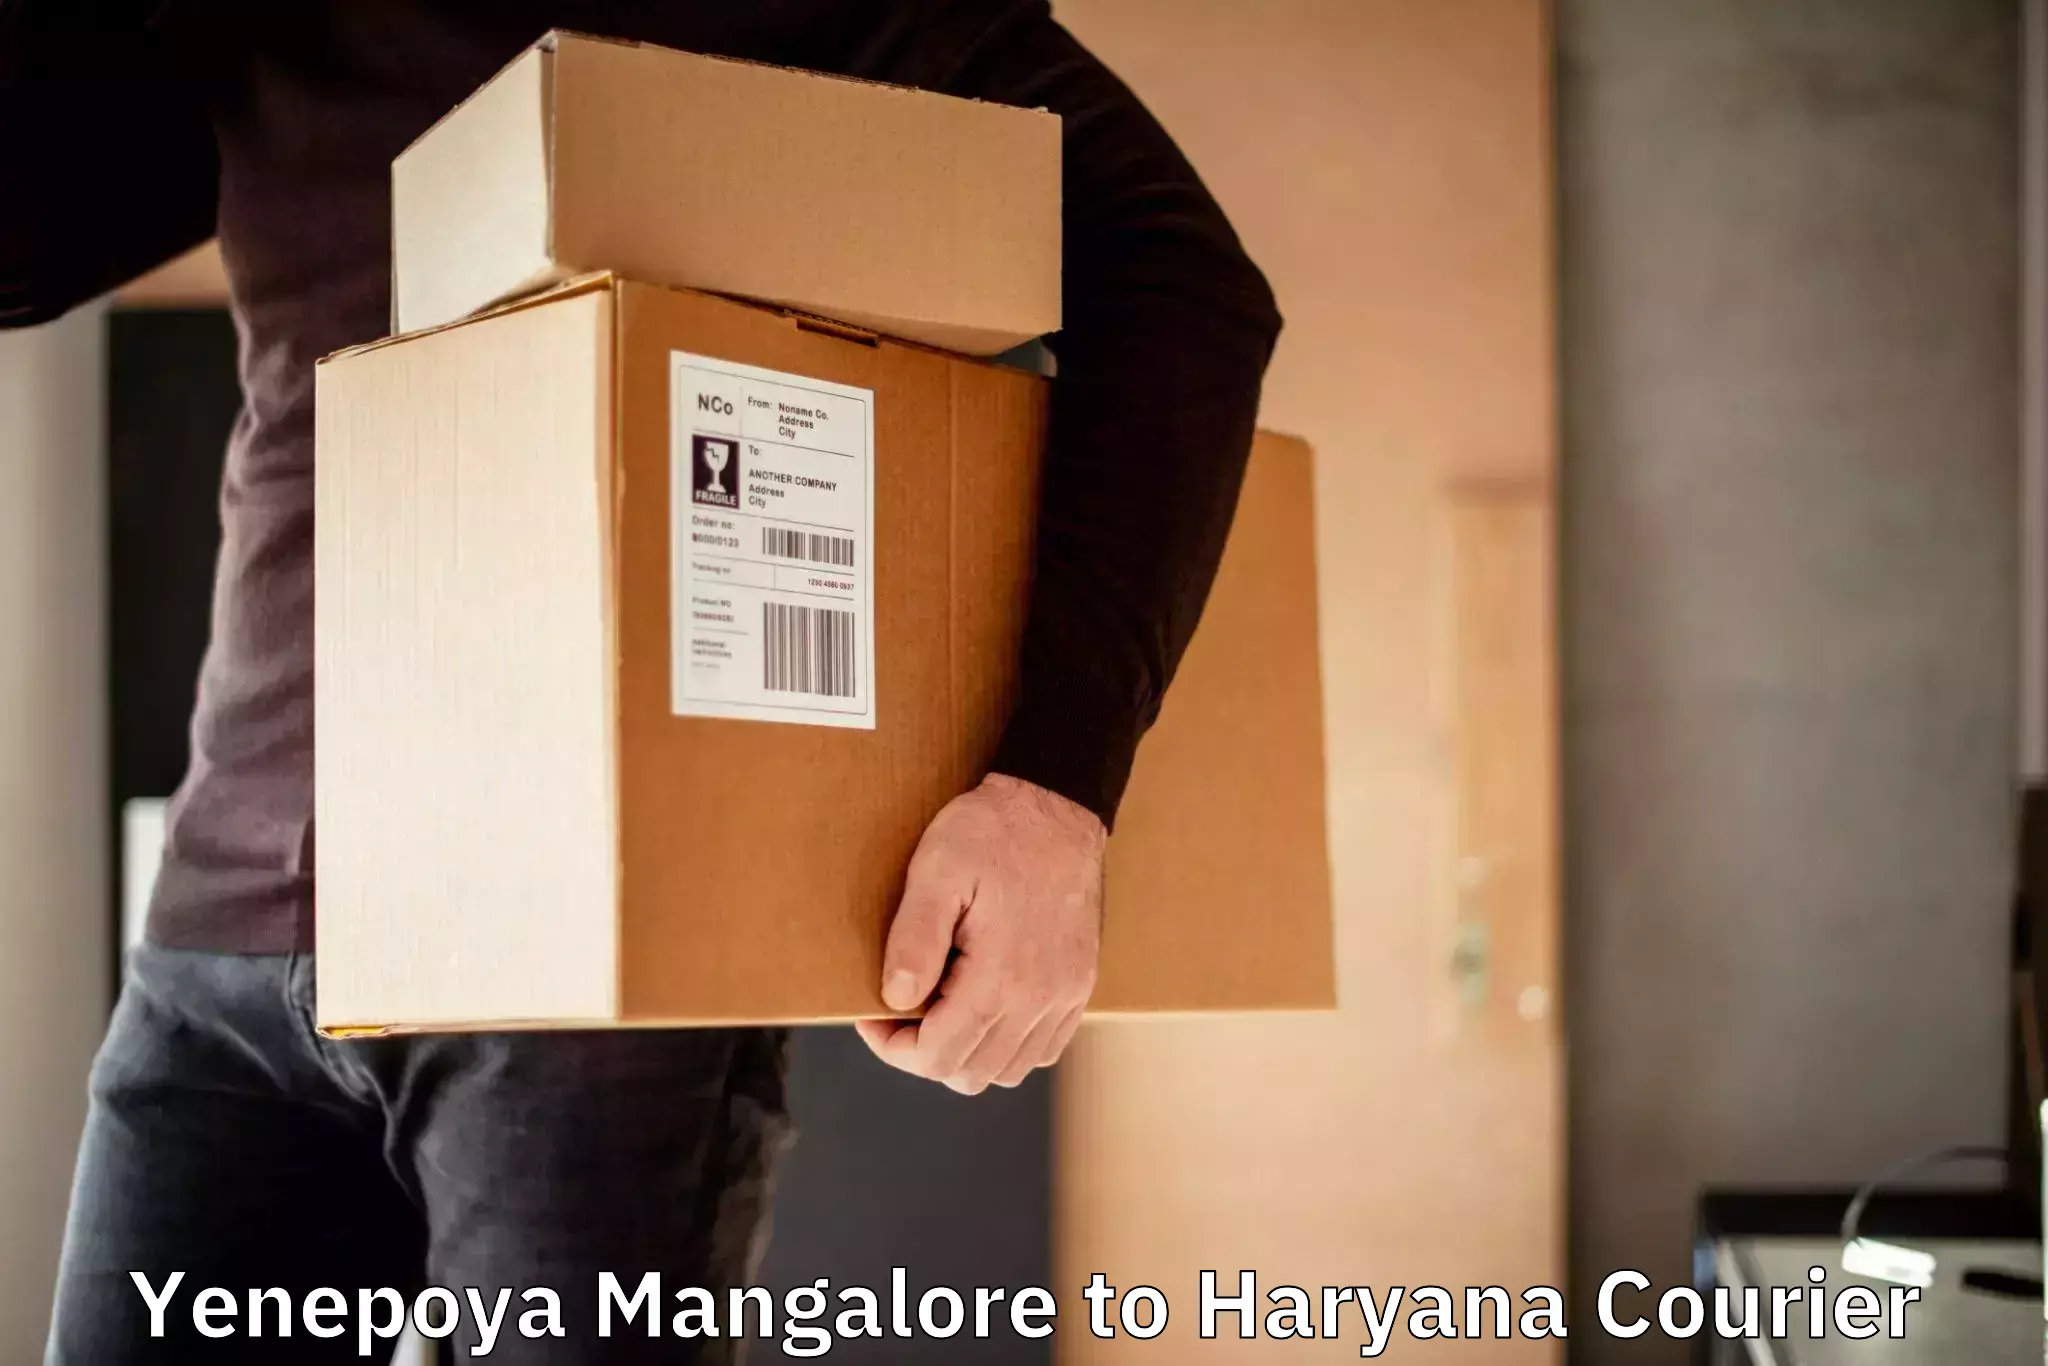 Rapid shipping services Yenepoya Mangalore to Bhuna